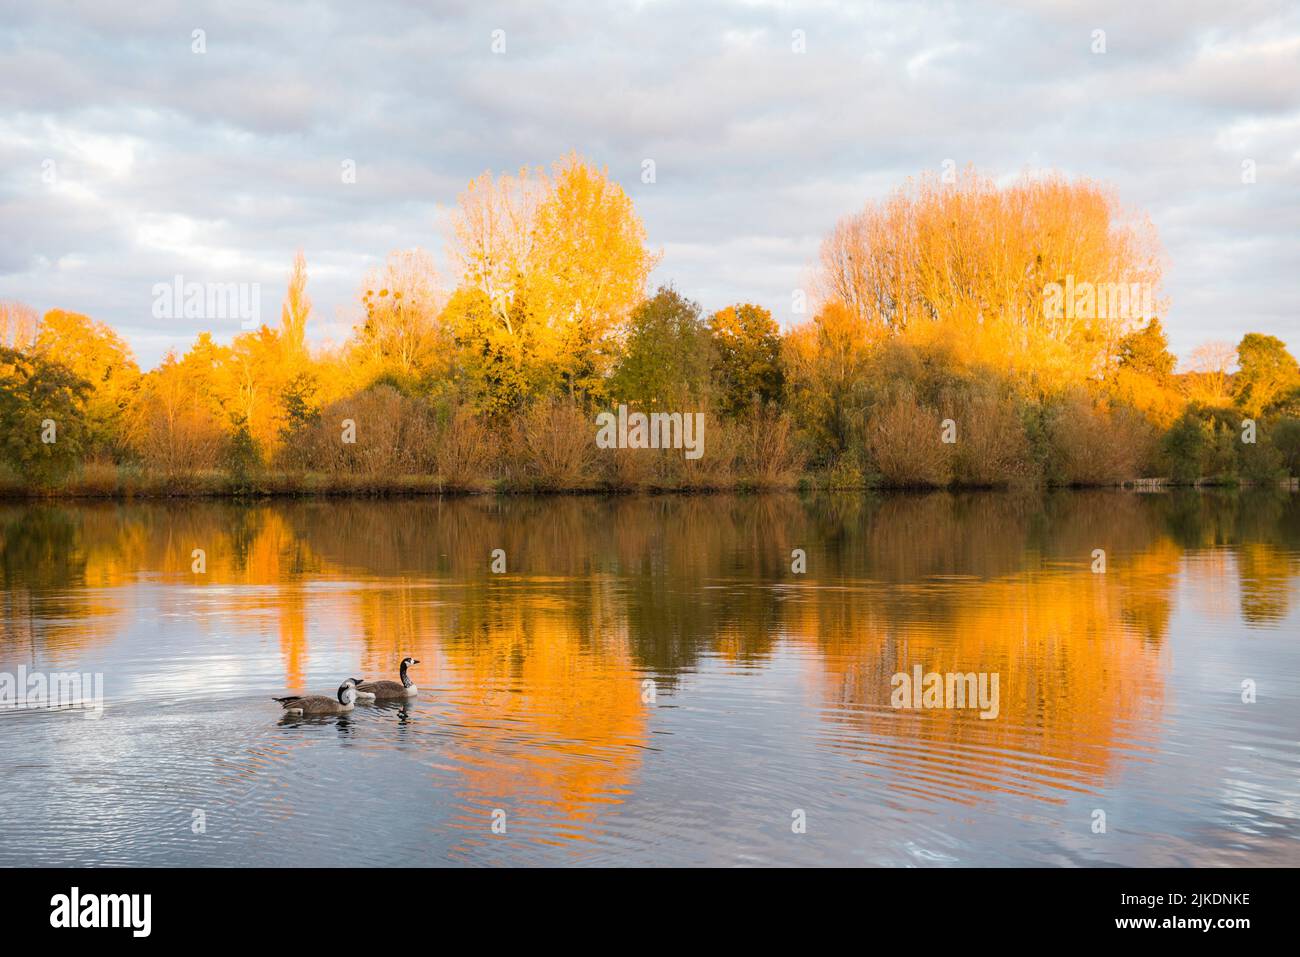 Pond of Chandelles by the Eure River, Eure-et-Loir department, Centre-Val-de-Loire region, France, Europe. Stock Photo